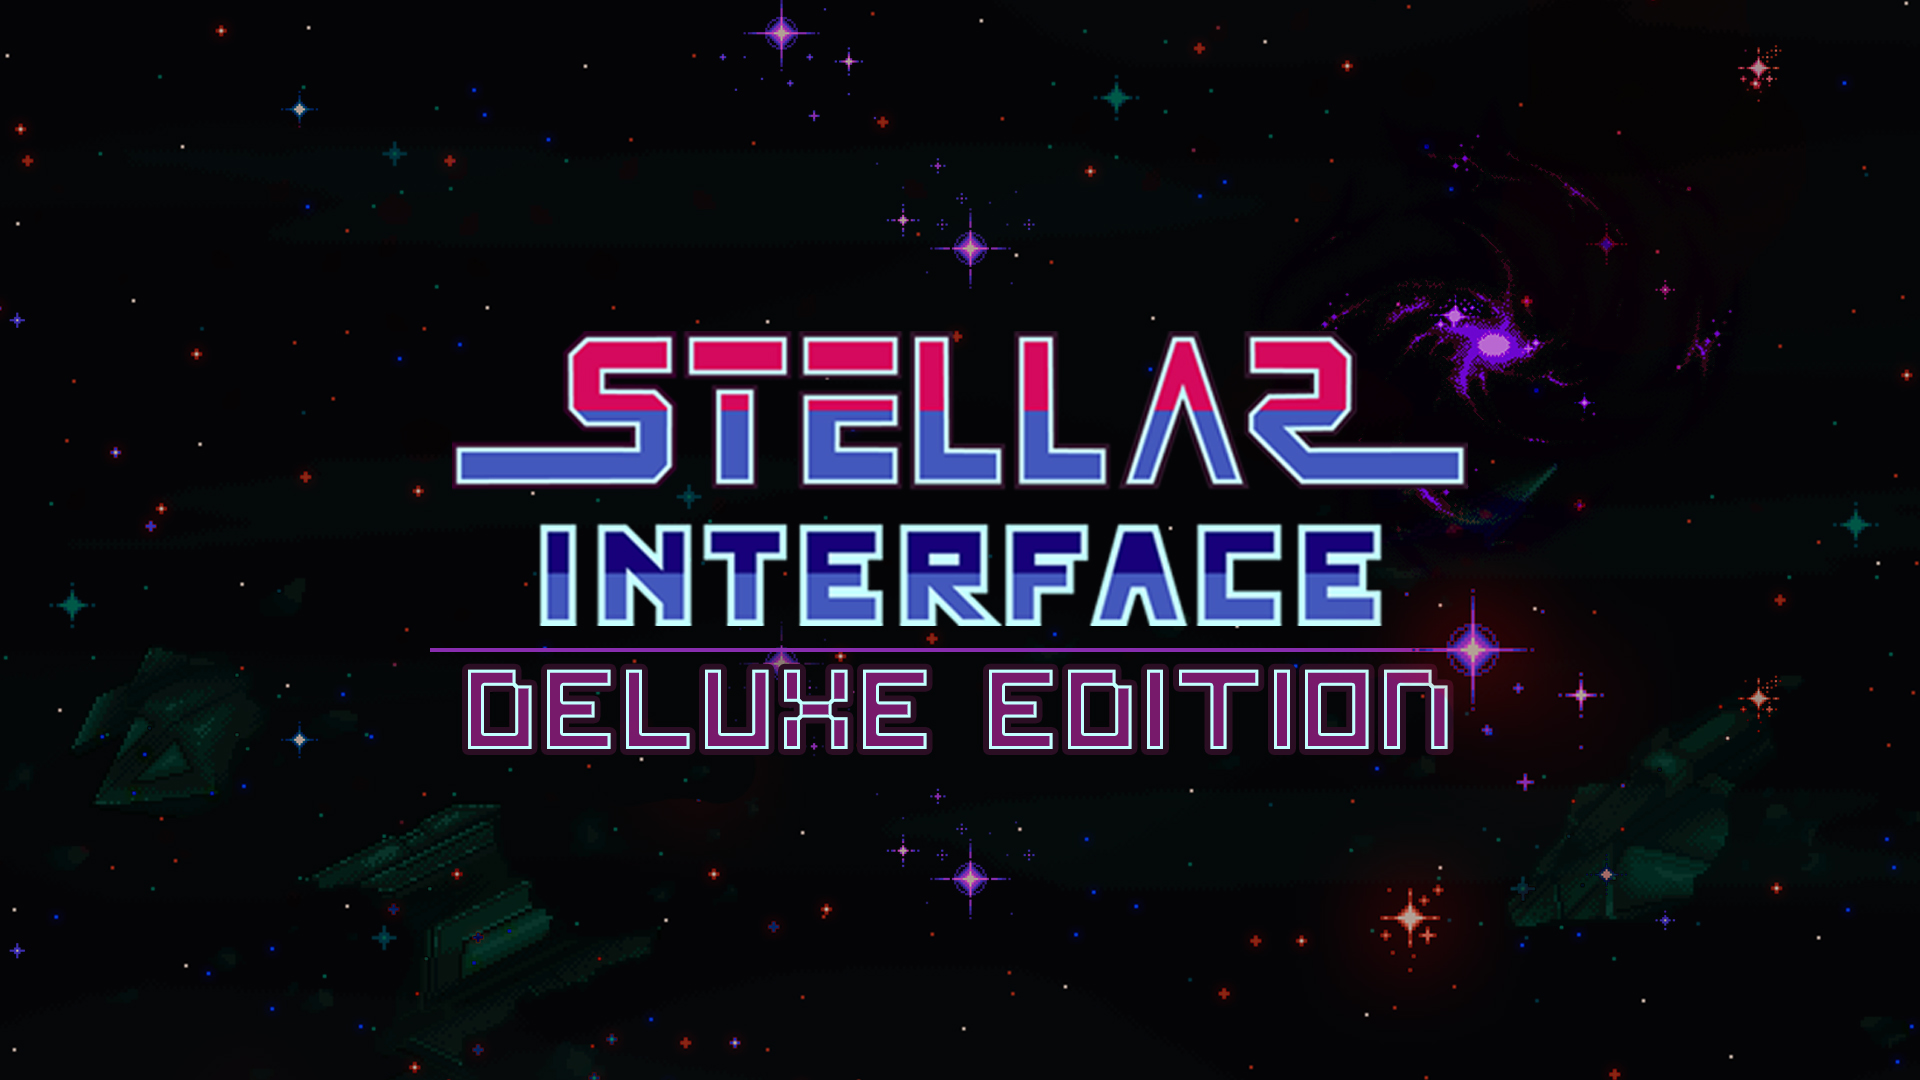 Stellar Interface for mac download